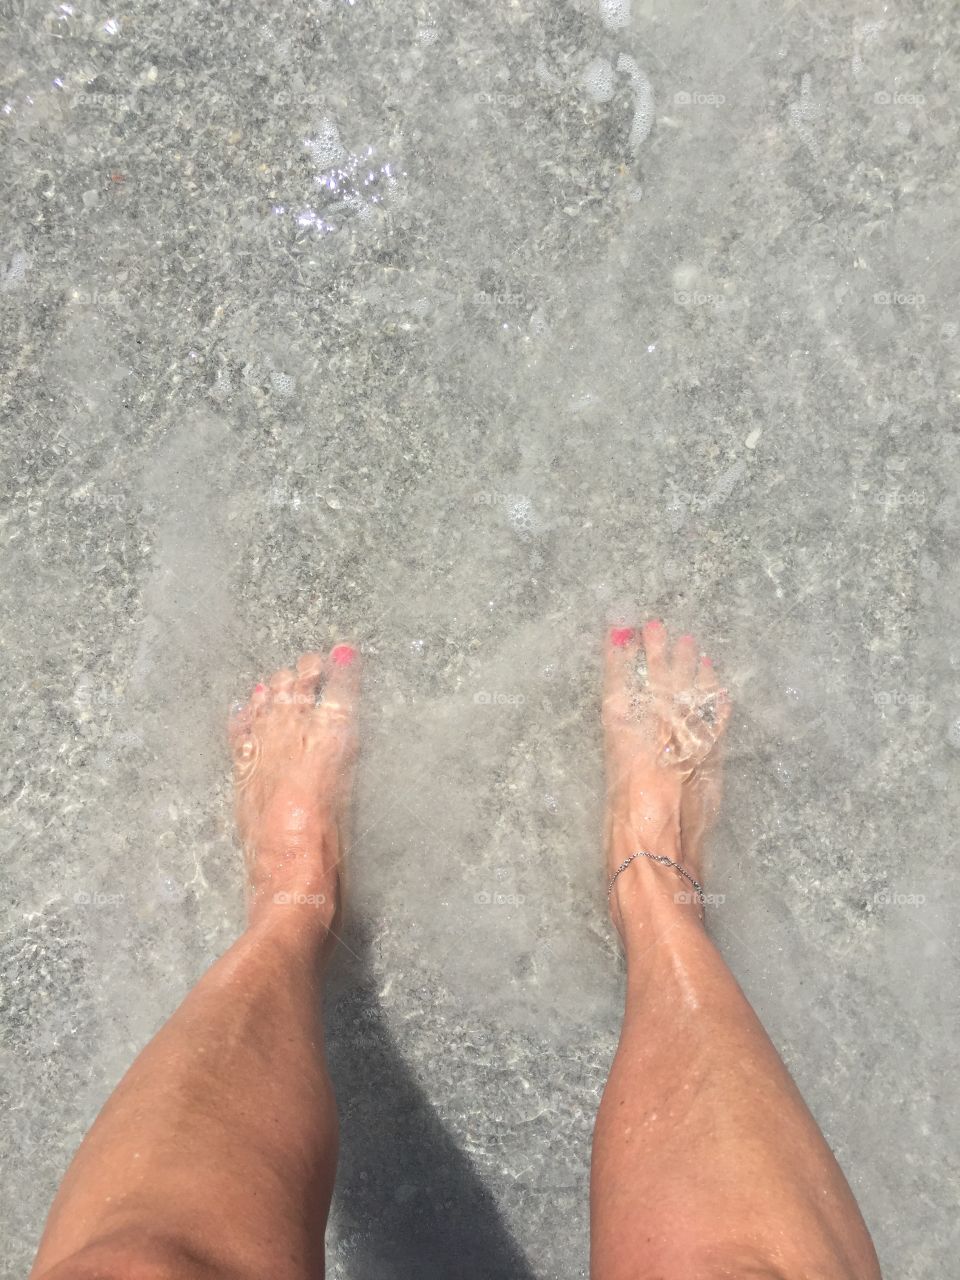 Feet in ocean
